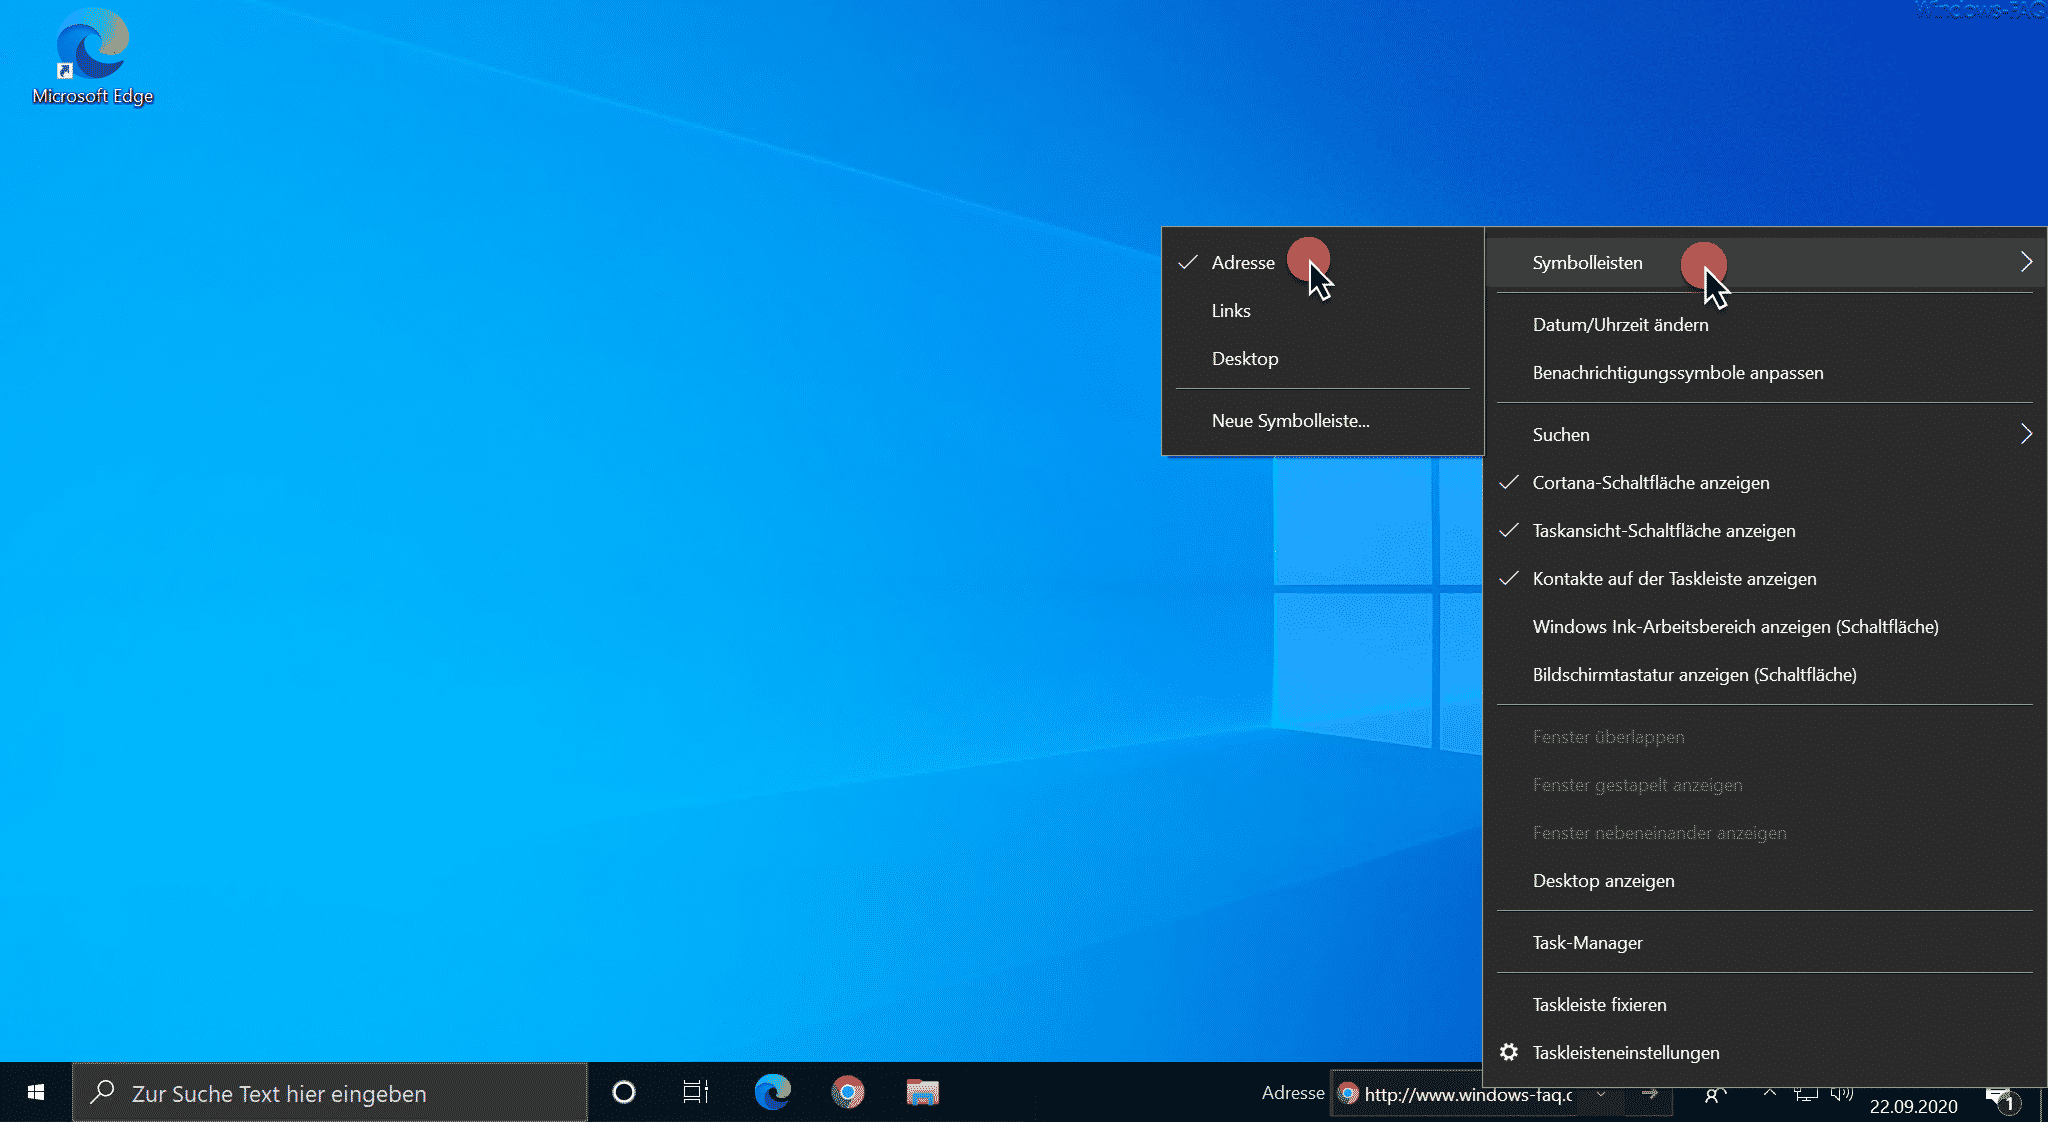 Symbolleisten bei Windows 10 (Adresseingabe)